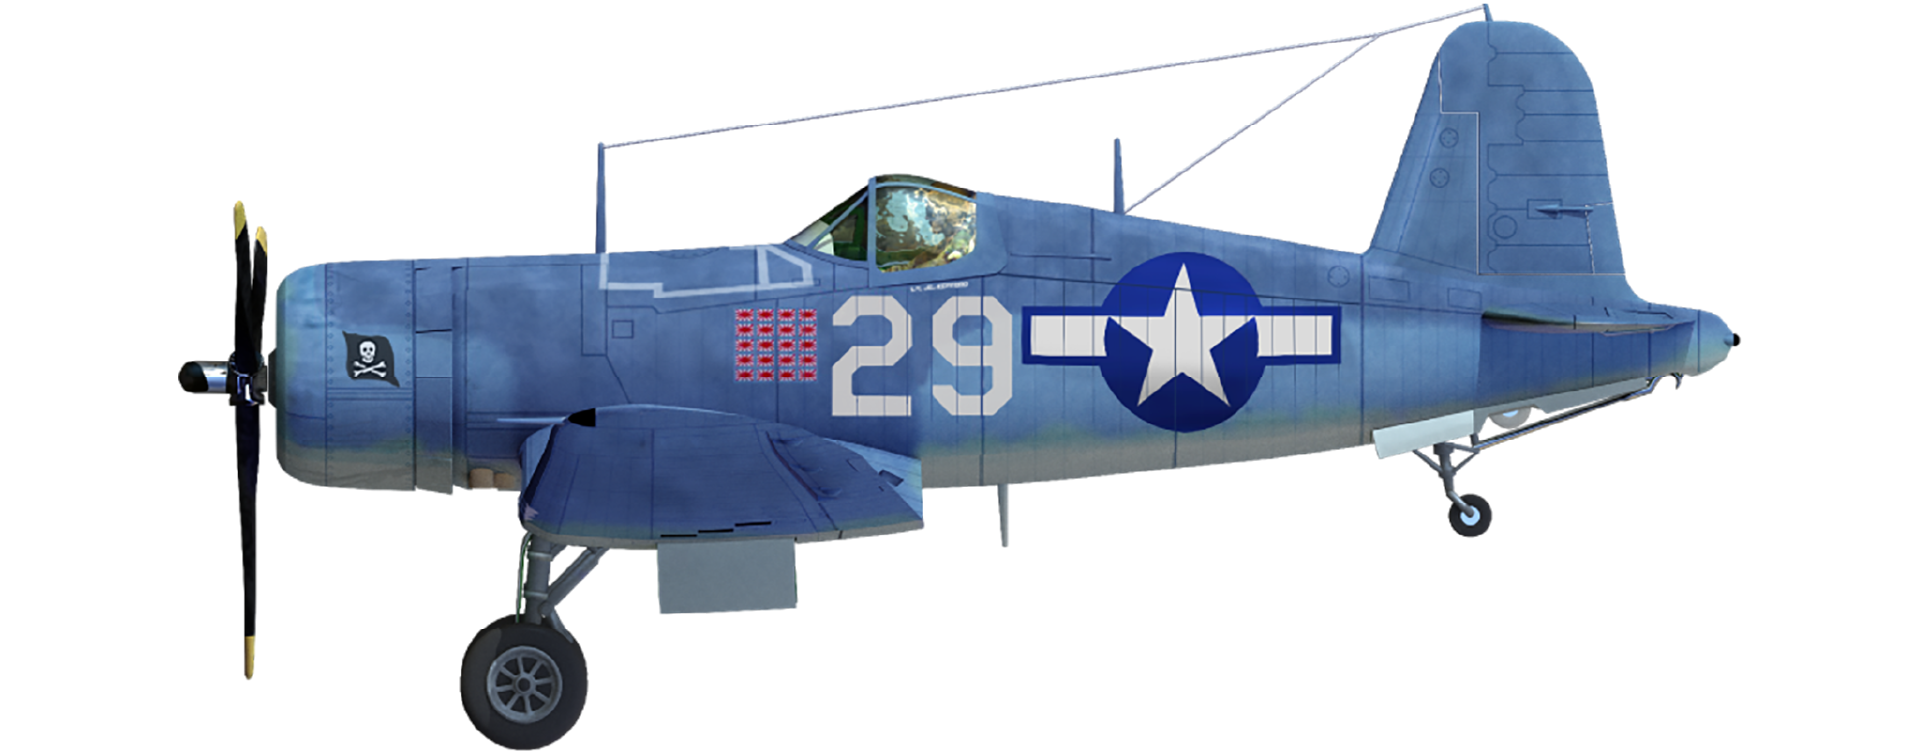 F4U-1A